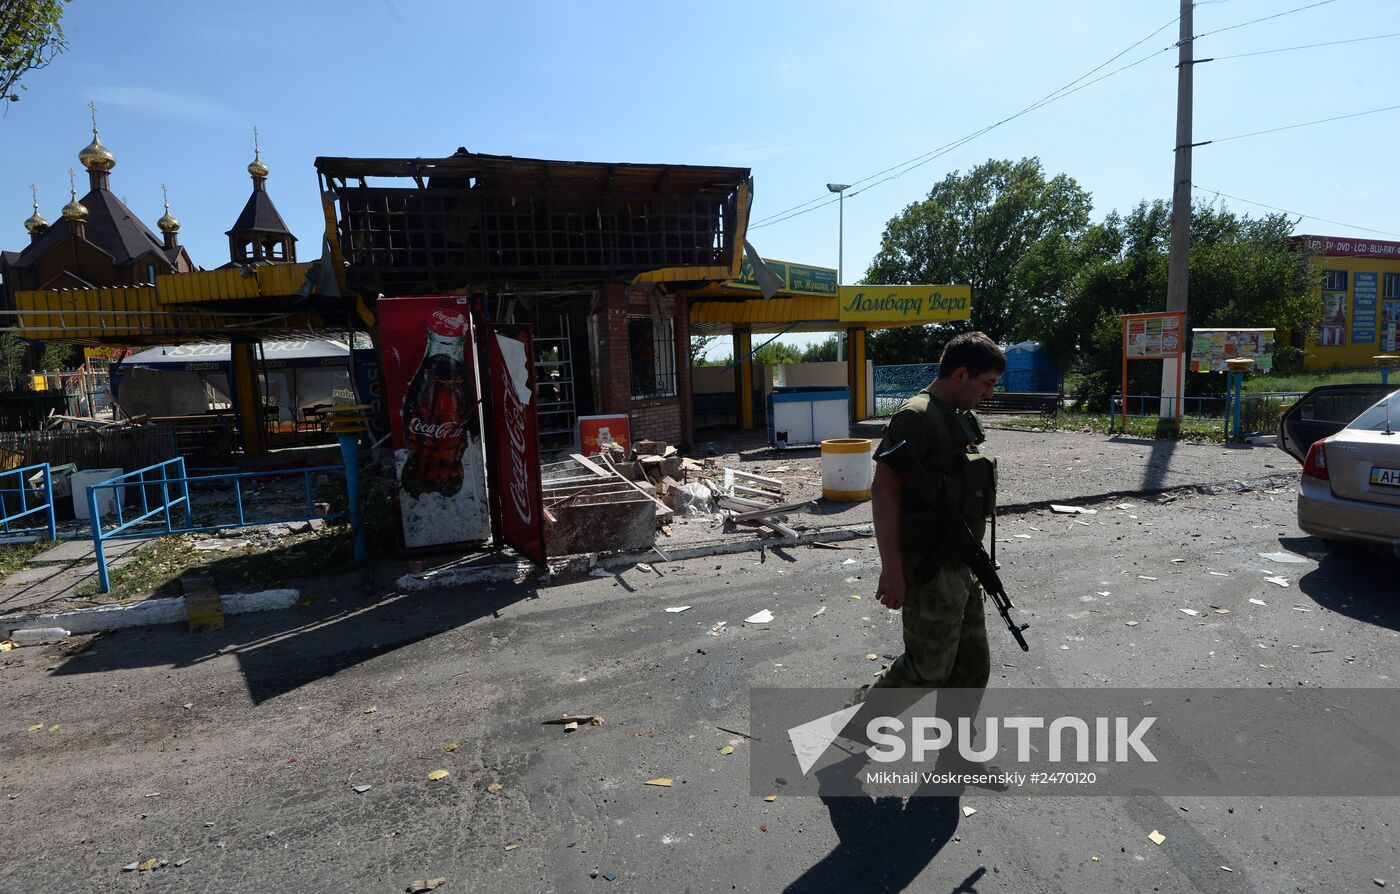 Update on Gorlovka in Donetsk Region